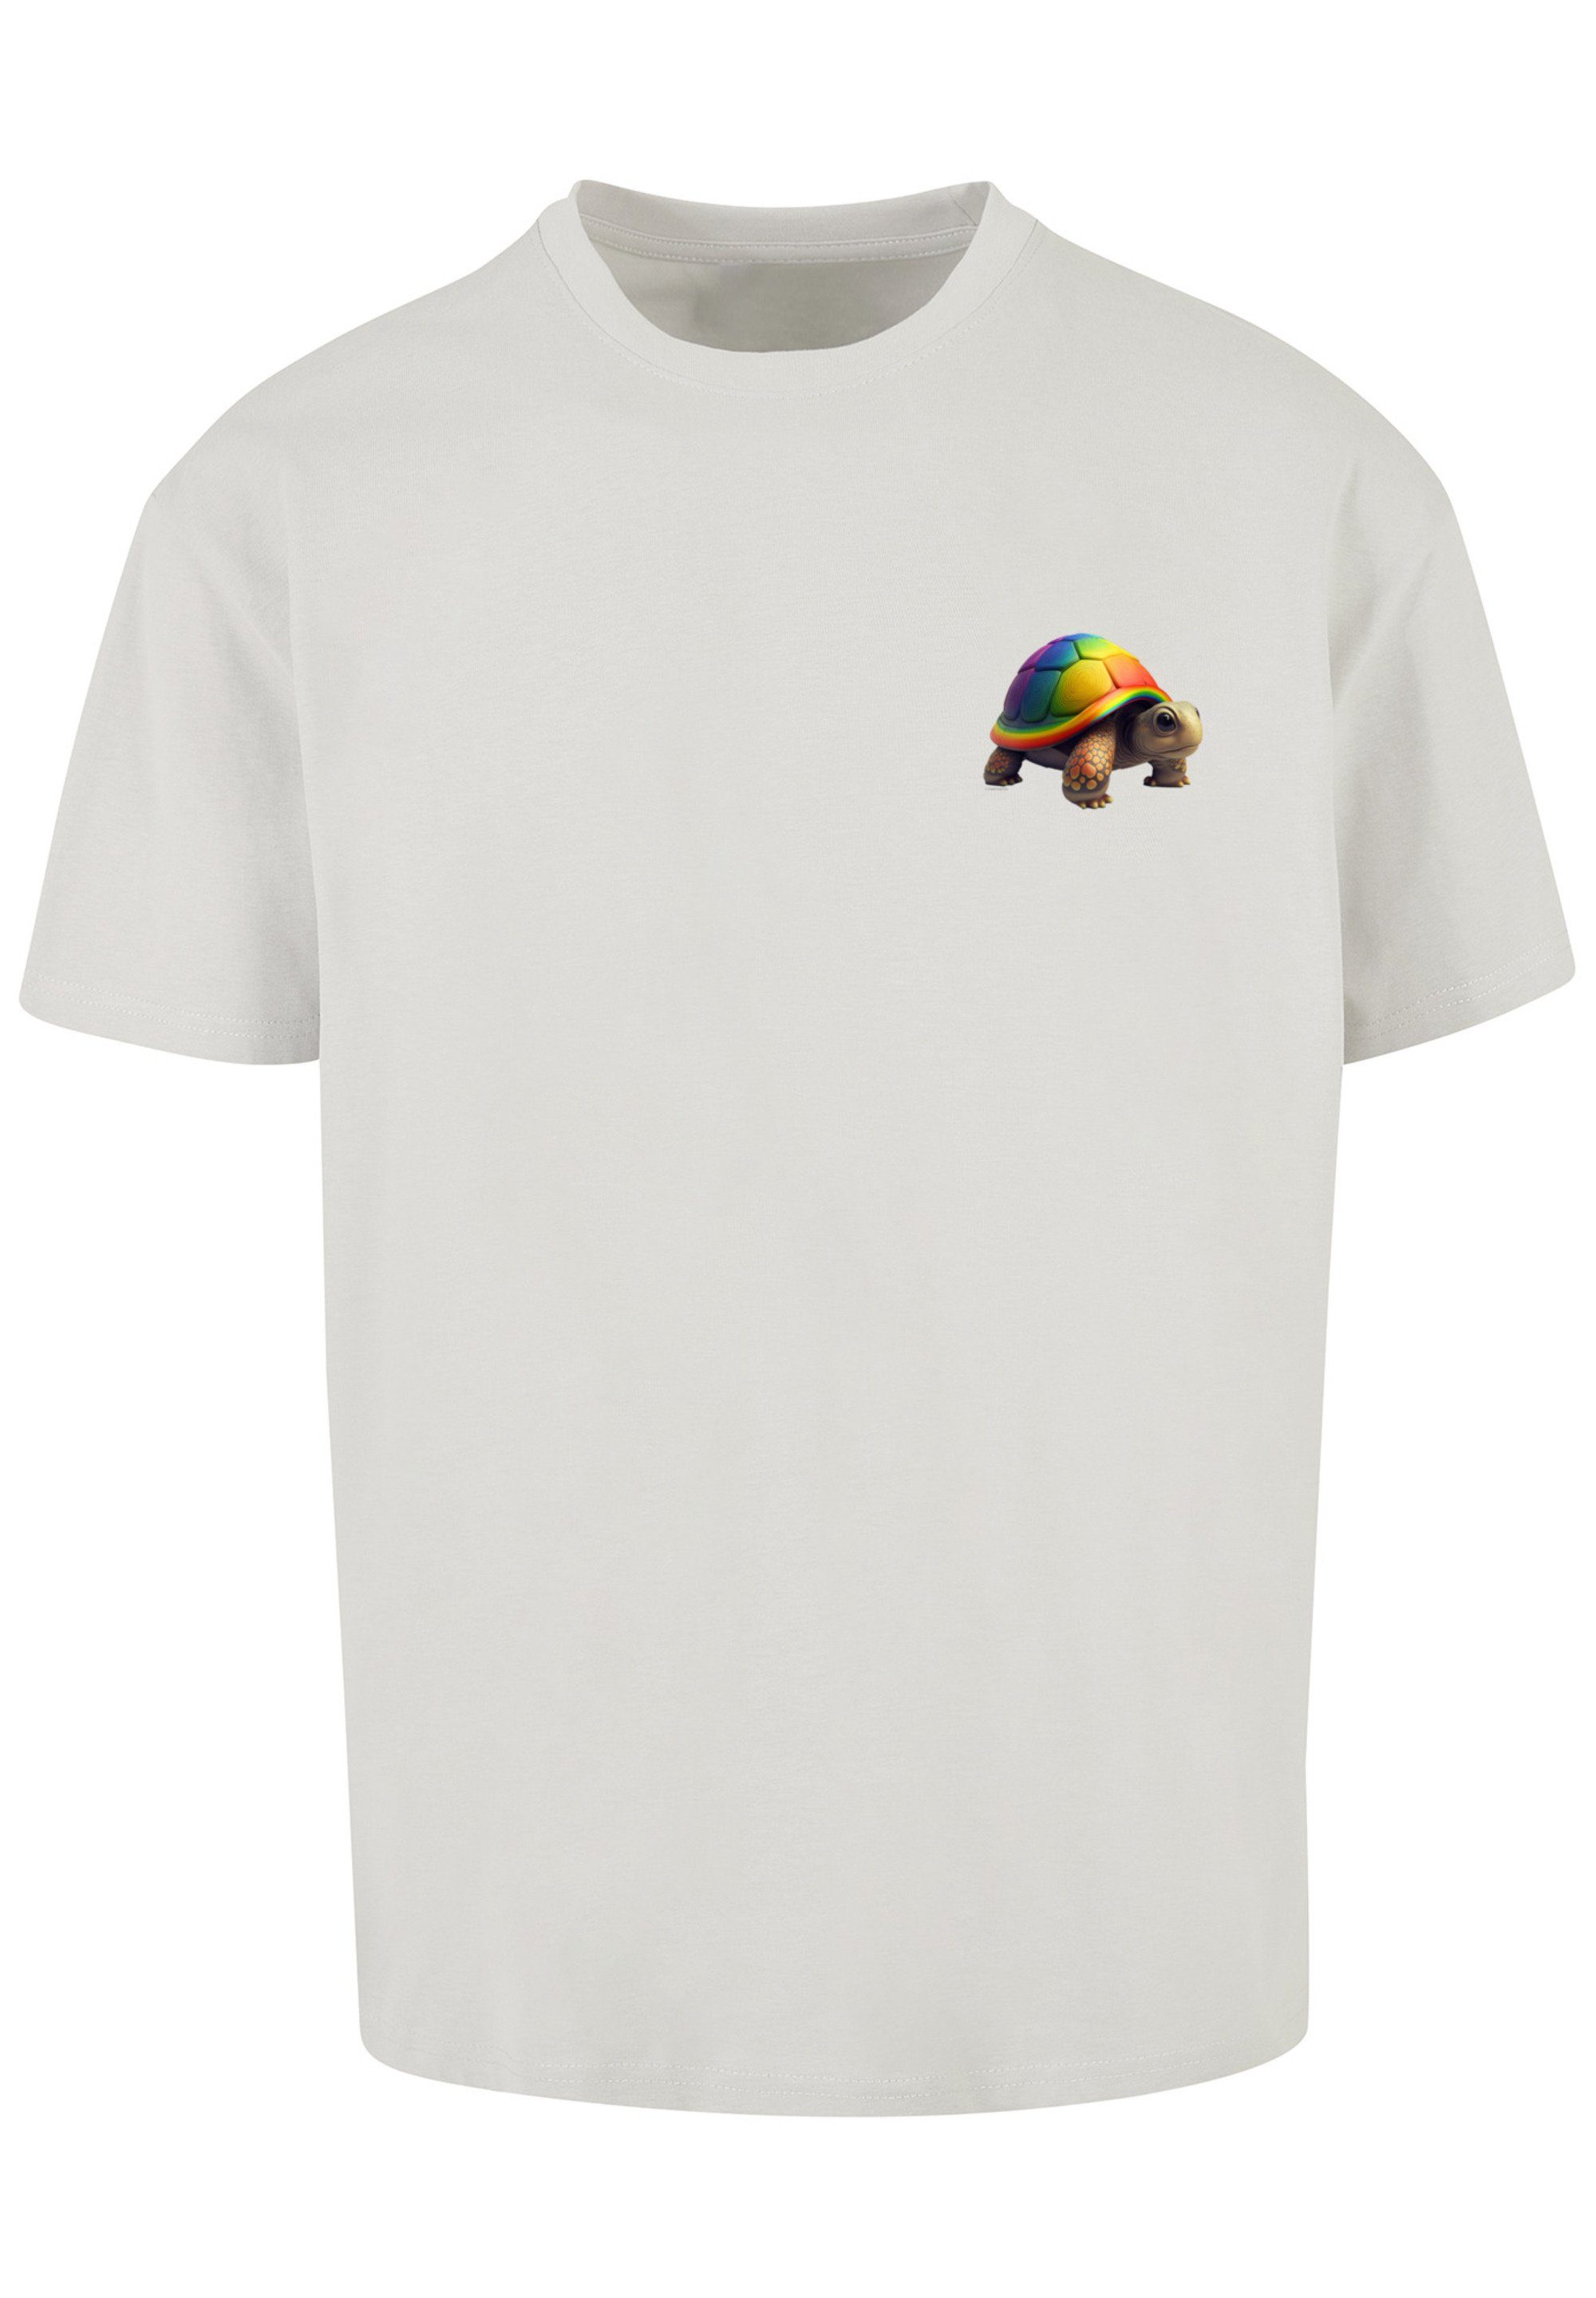 F4NT4STIC T-Shirt Rainbow Turtle lightasphalt TEE Print OVERSIZE